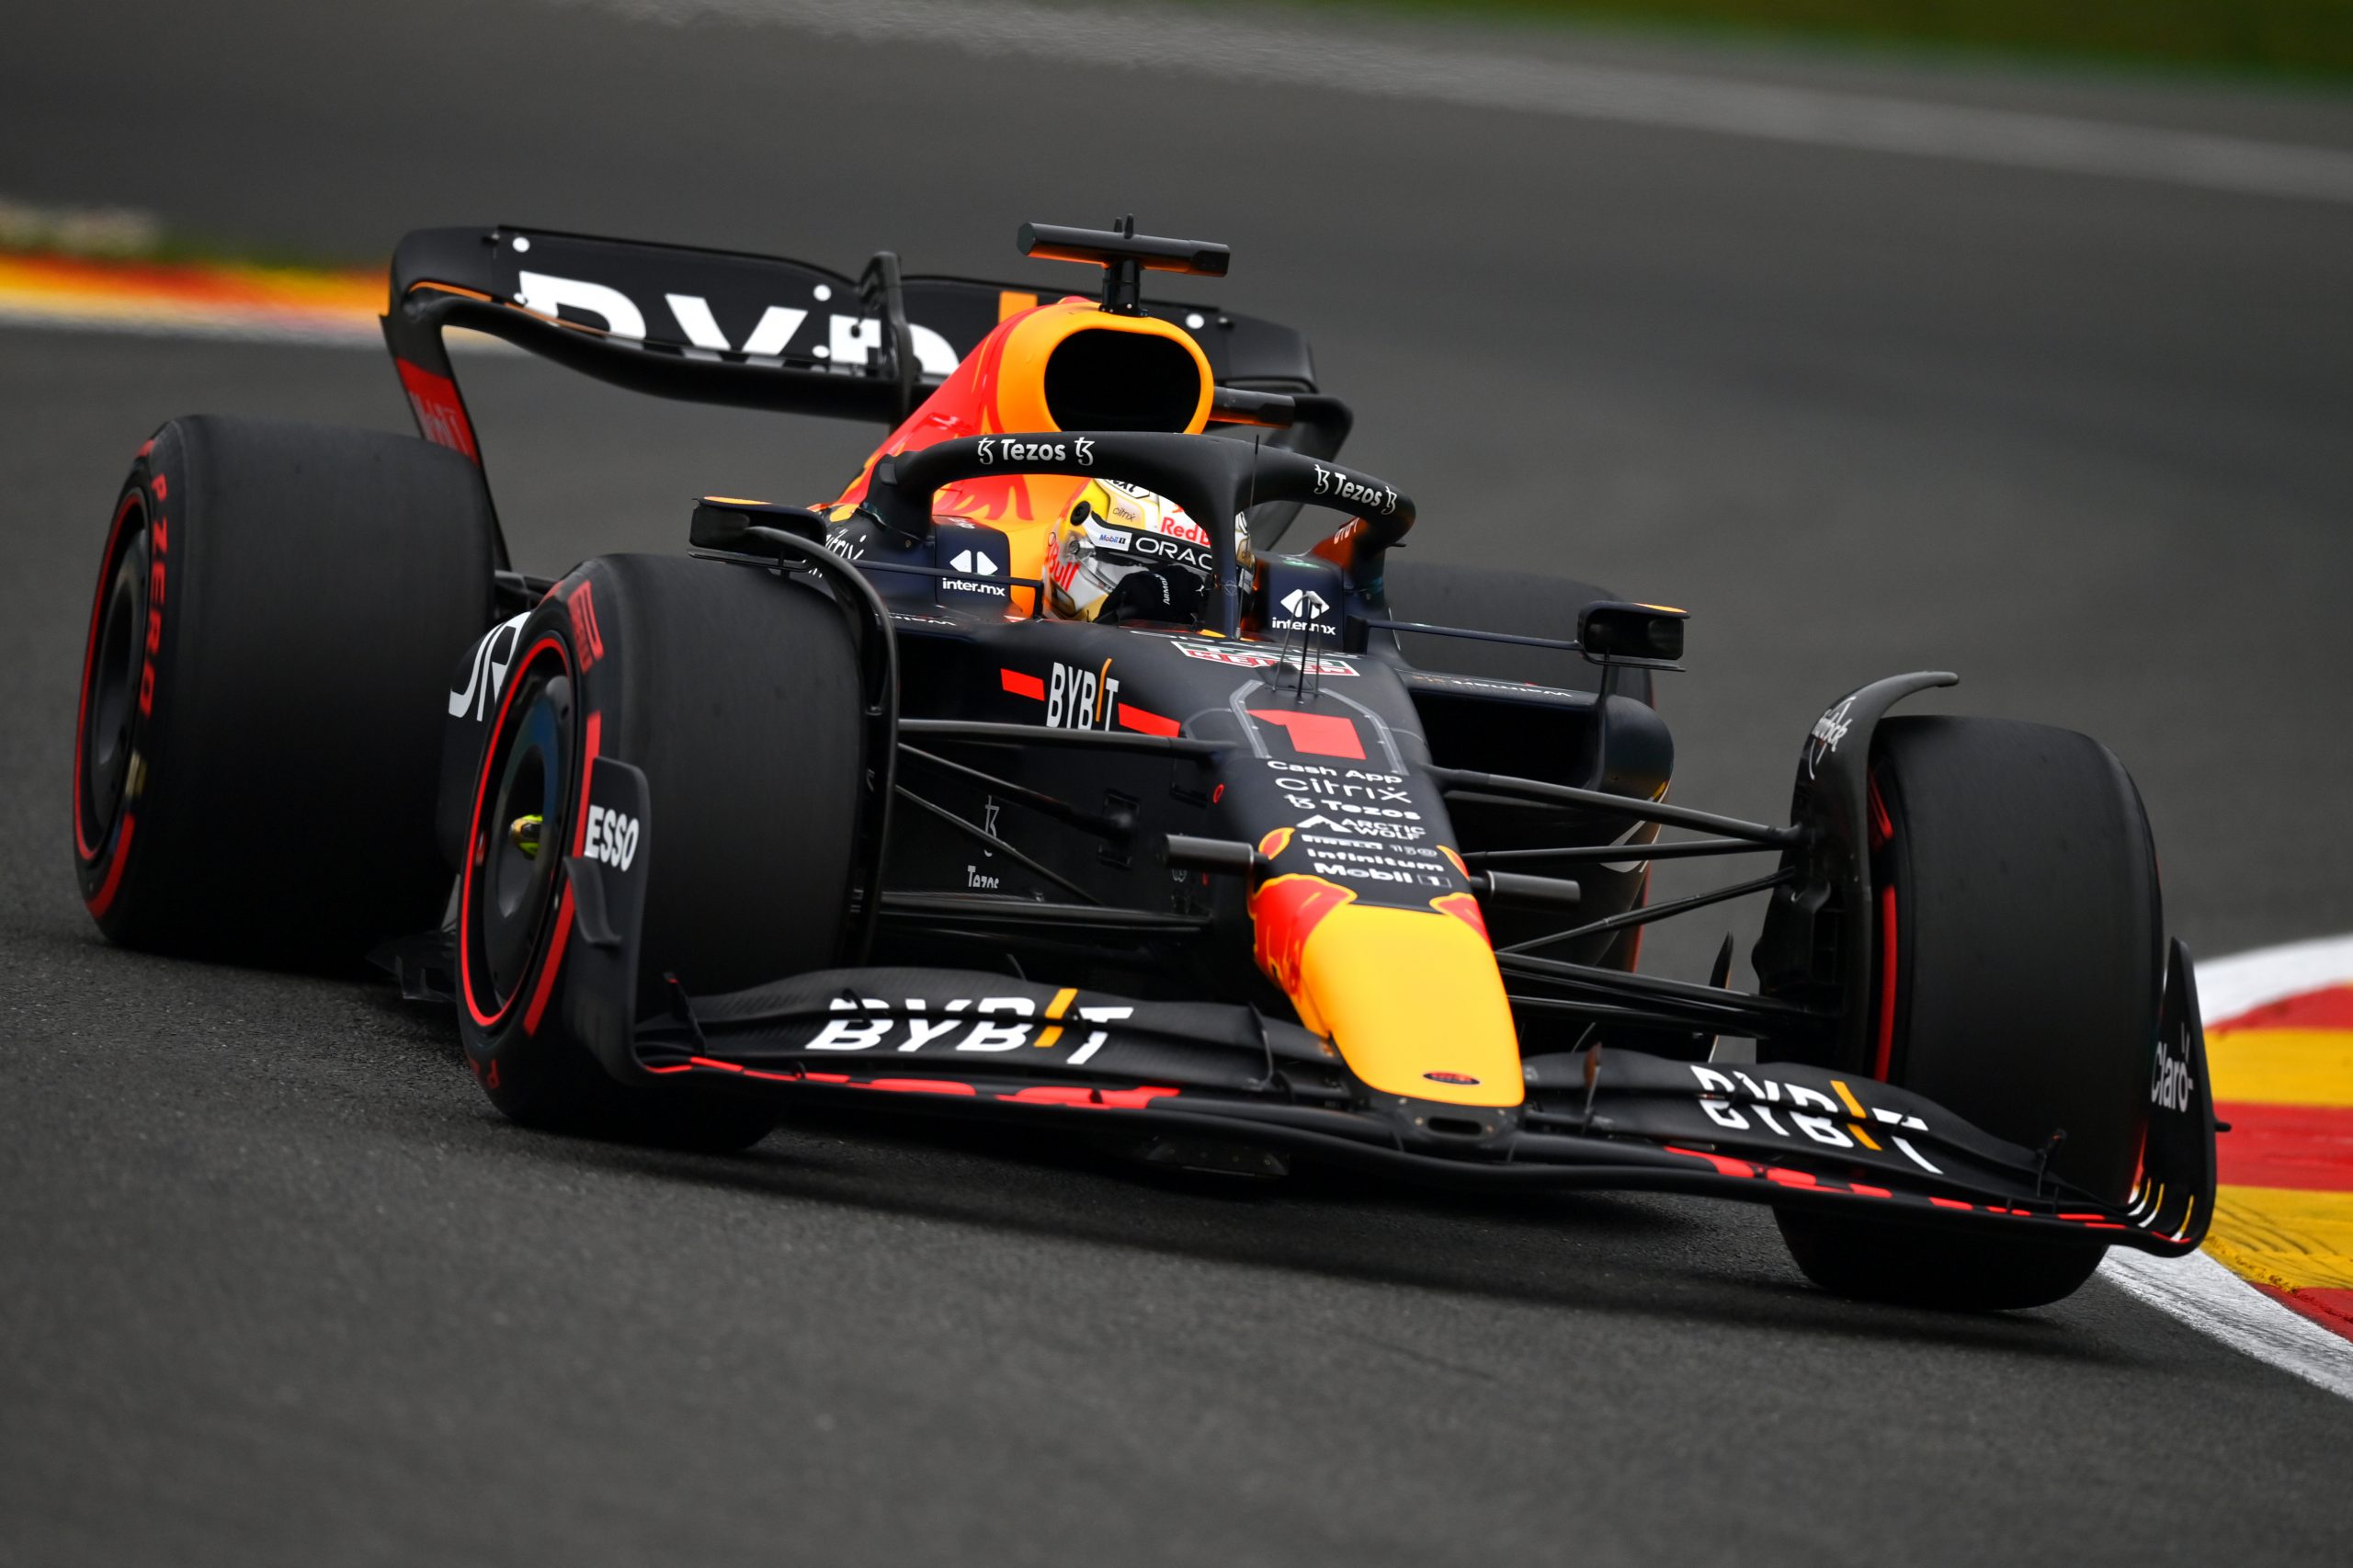 F1 Grand Prix of Belgium - Practice - Verstappen